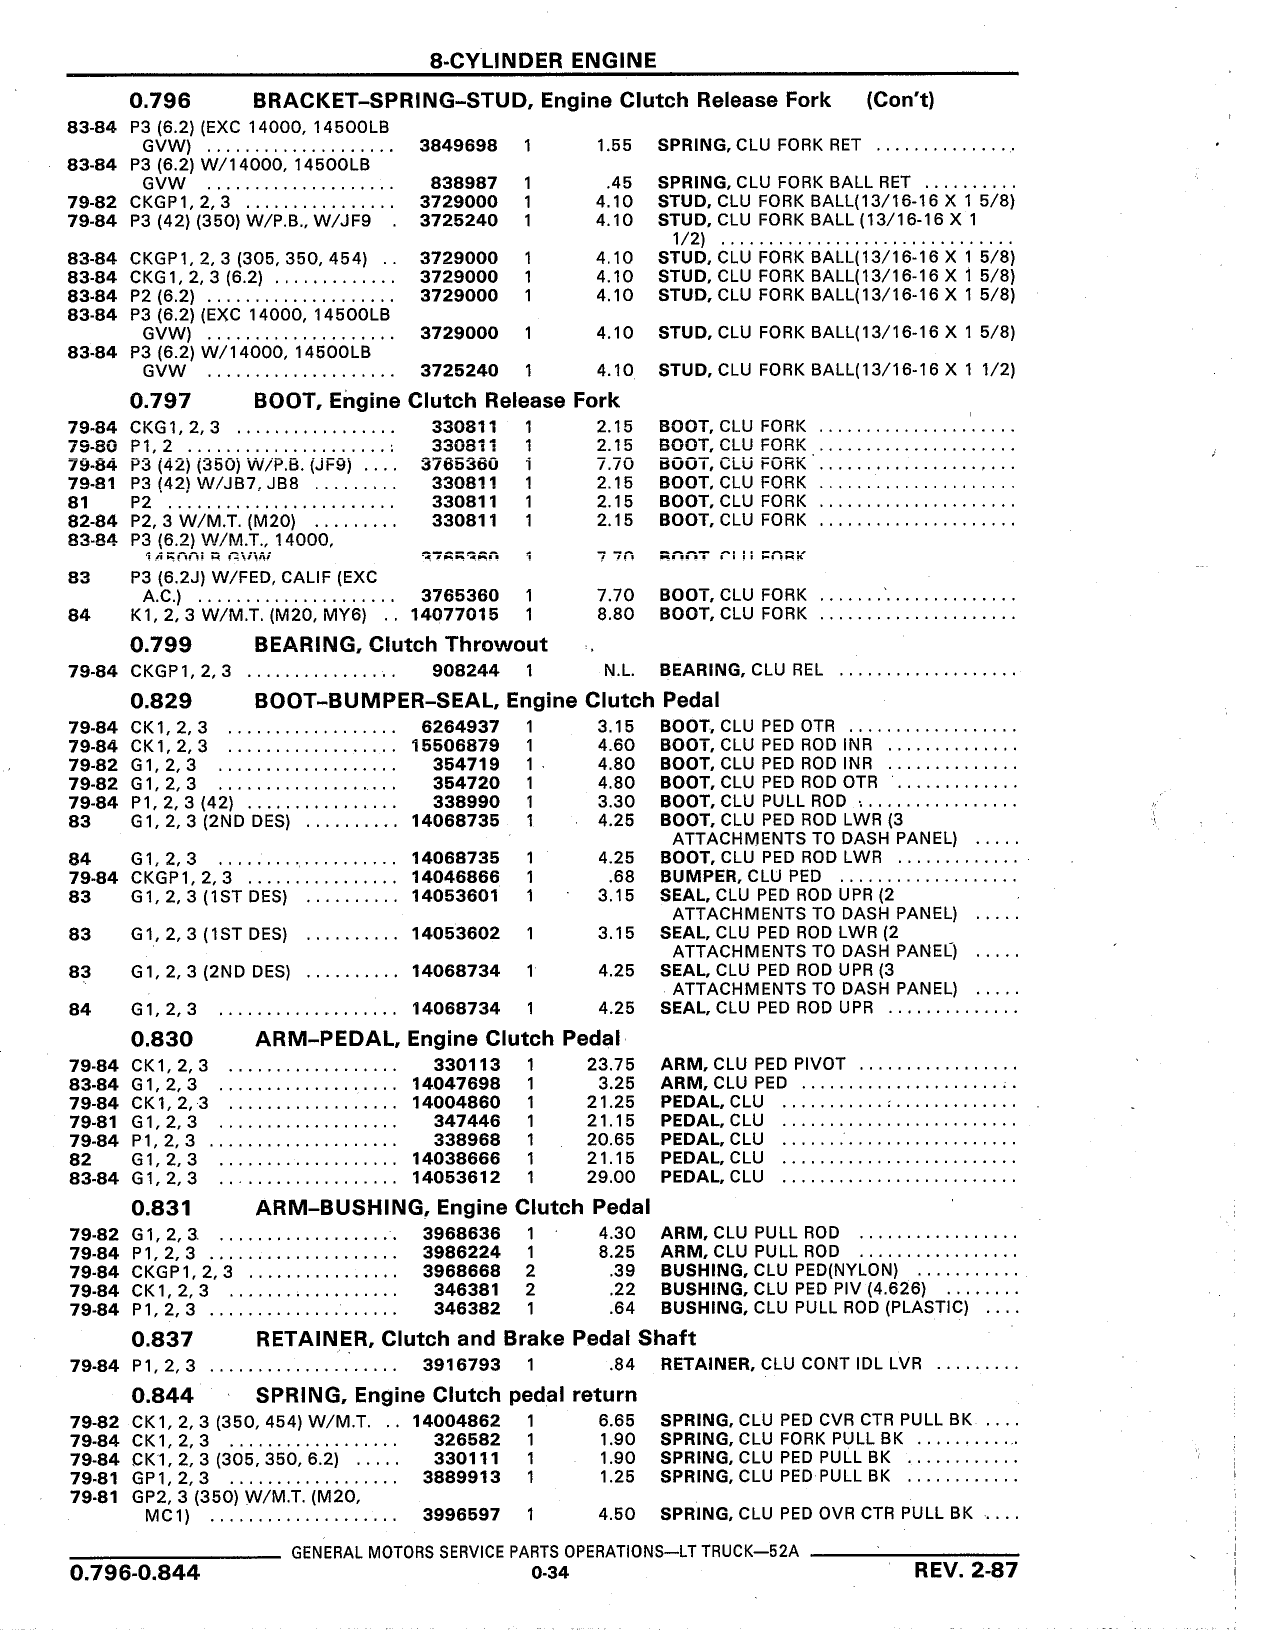 Parts Catalog 52A February 1987